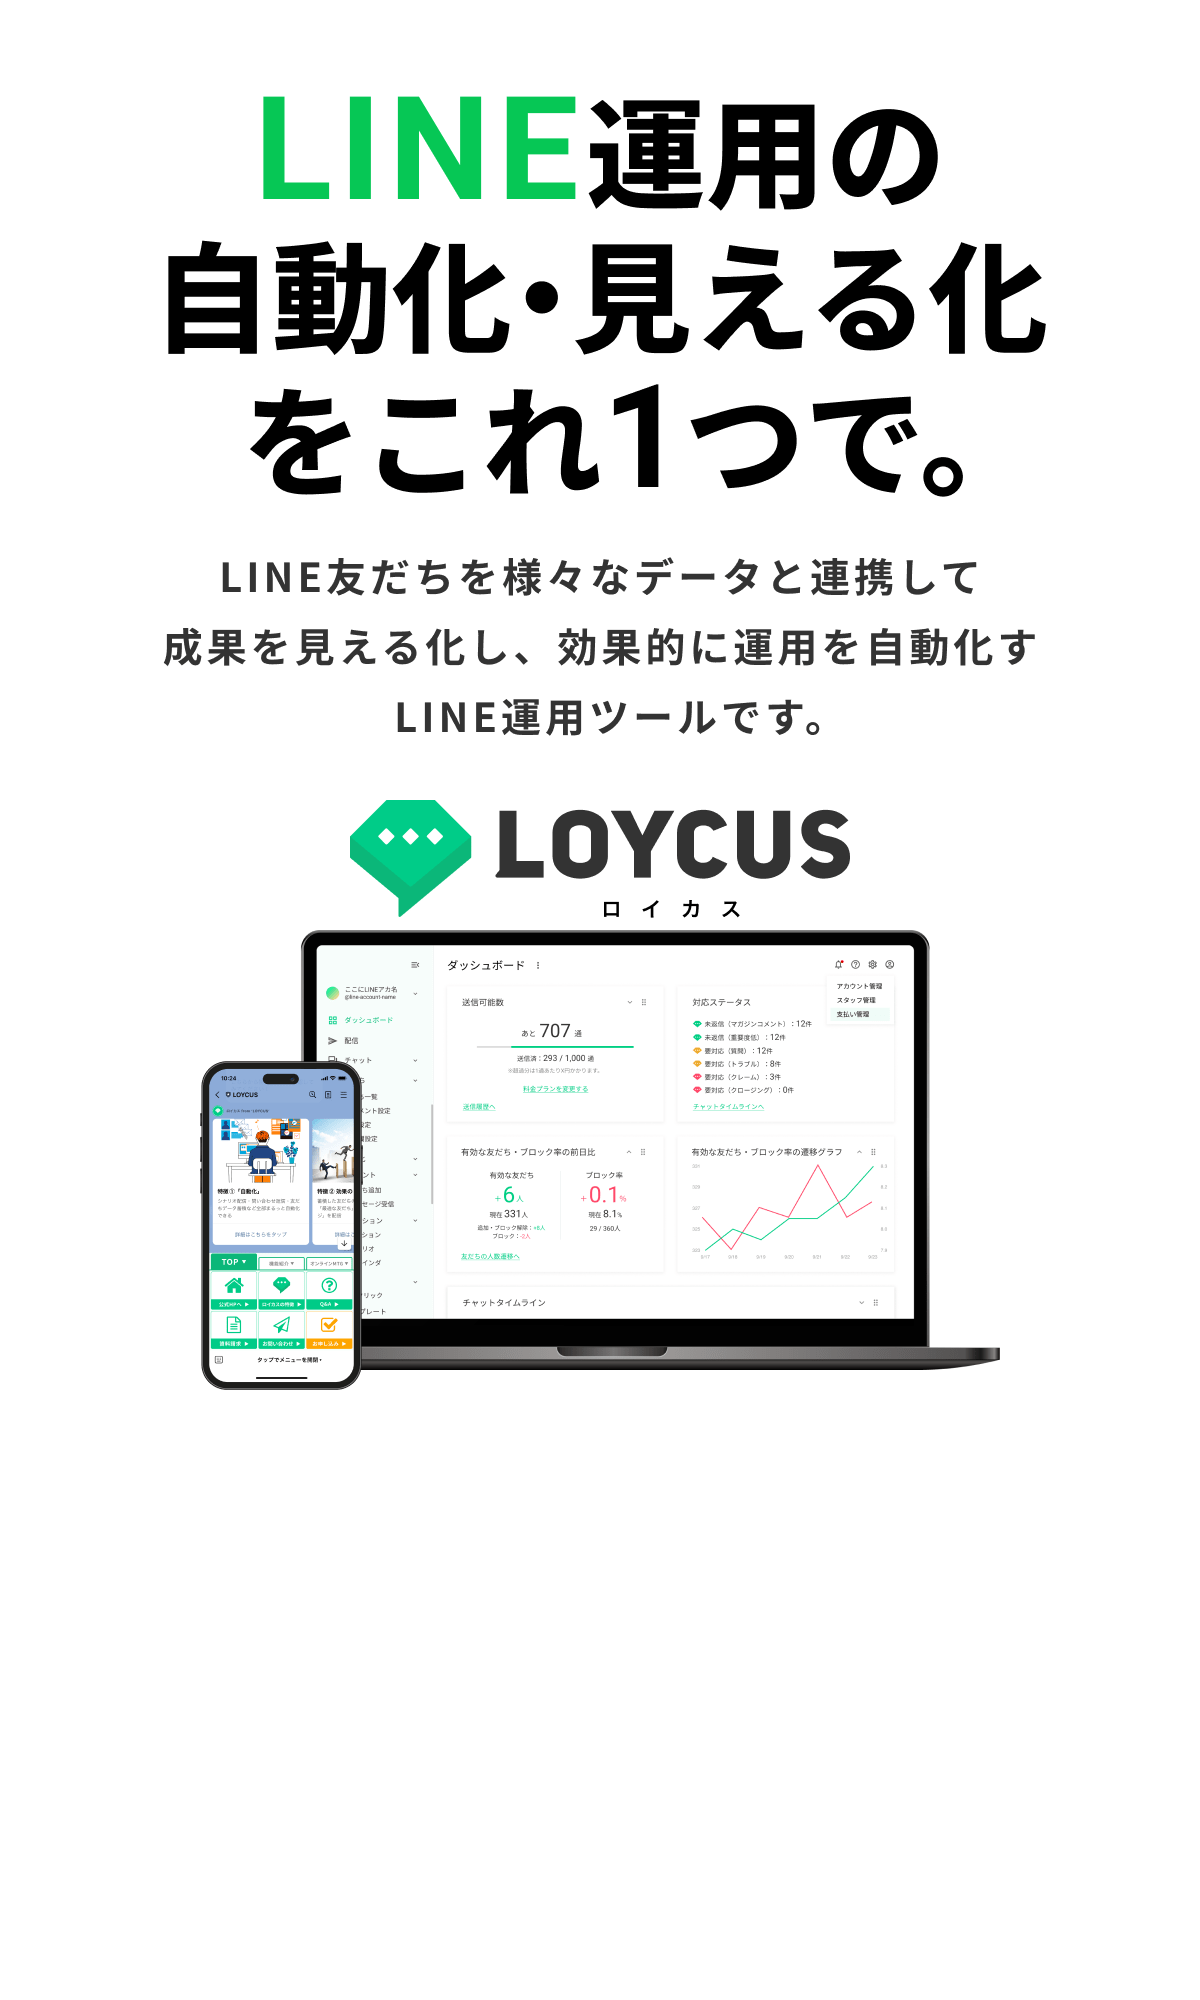 LOYCUS（ロイカス）｜LINE運用の自動化・見える化をこれ1つで。｜LINE友だちを様々なデータと連携して成果を見える化し、効果的に運用を自動化するLINE運用ツールです。